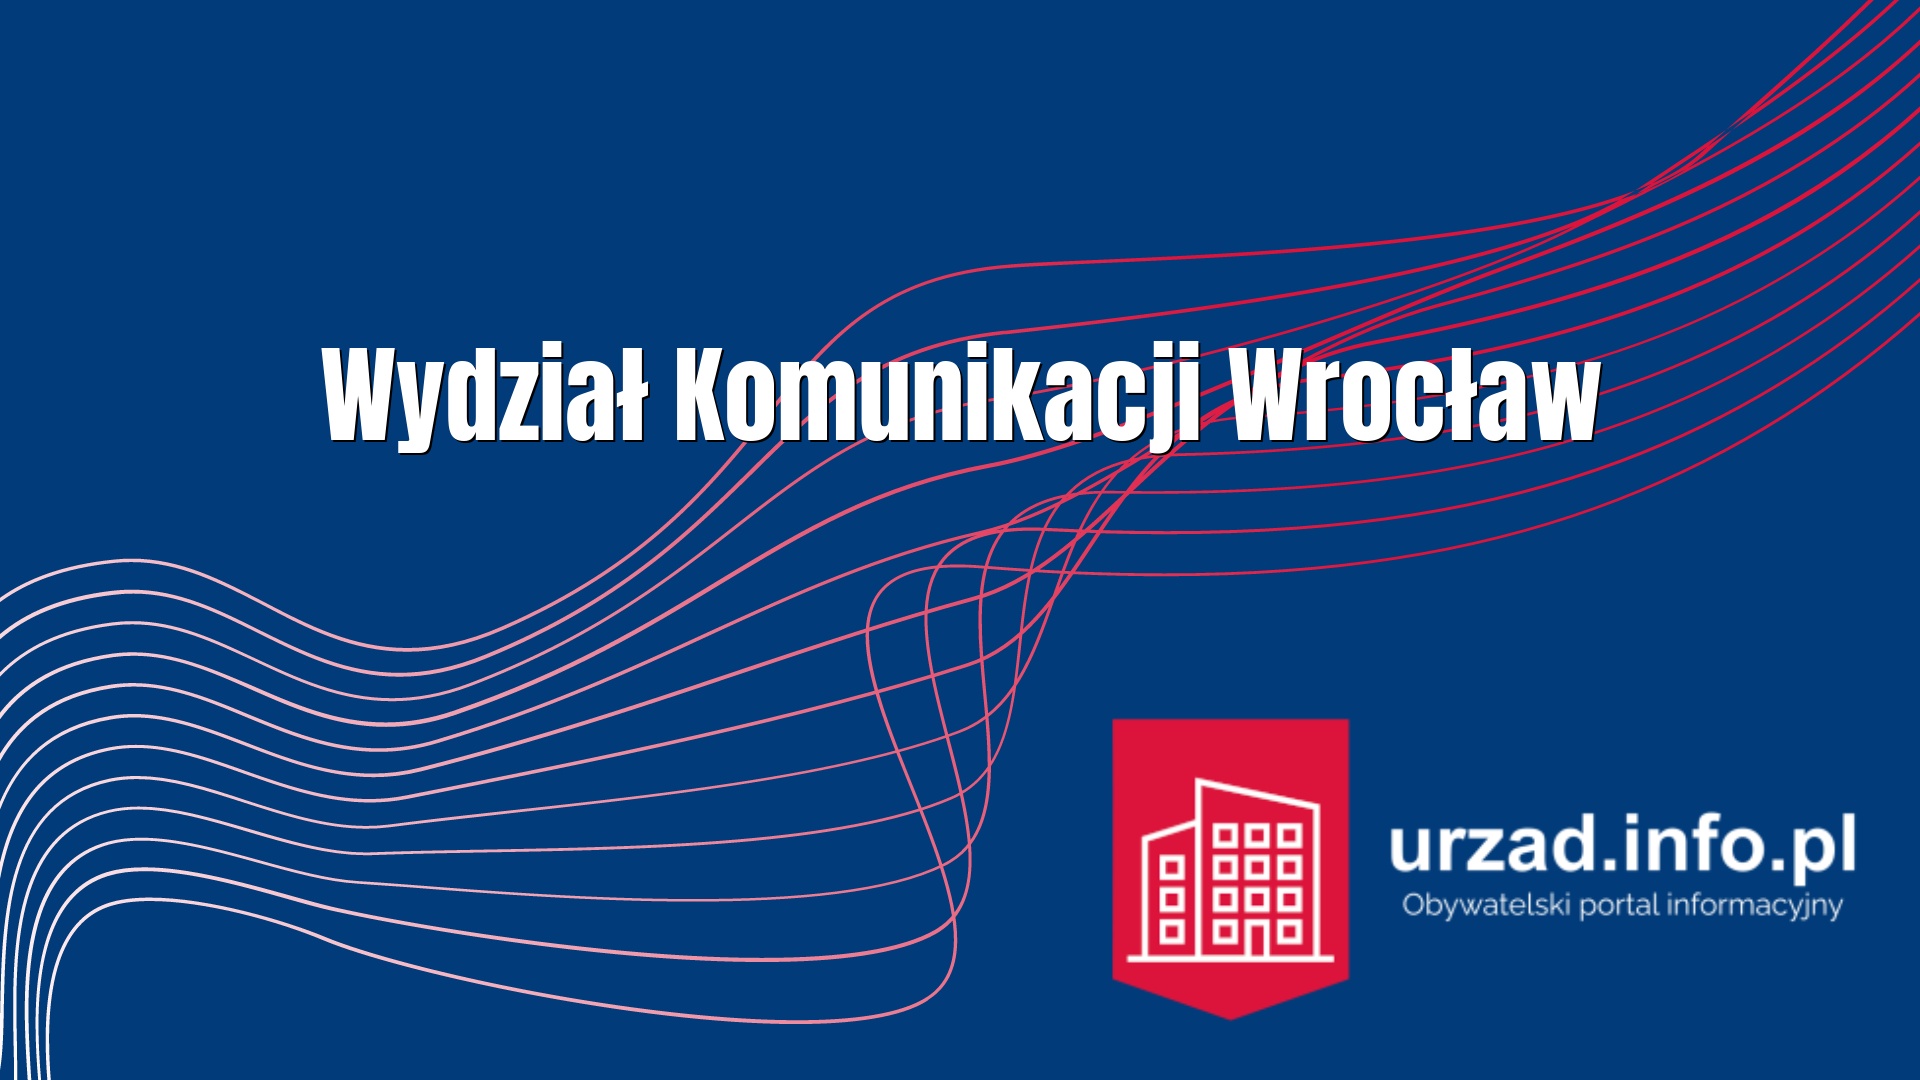 Wydział Komunikacji Wrocław